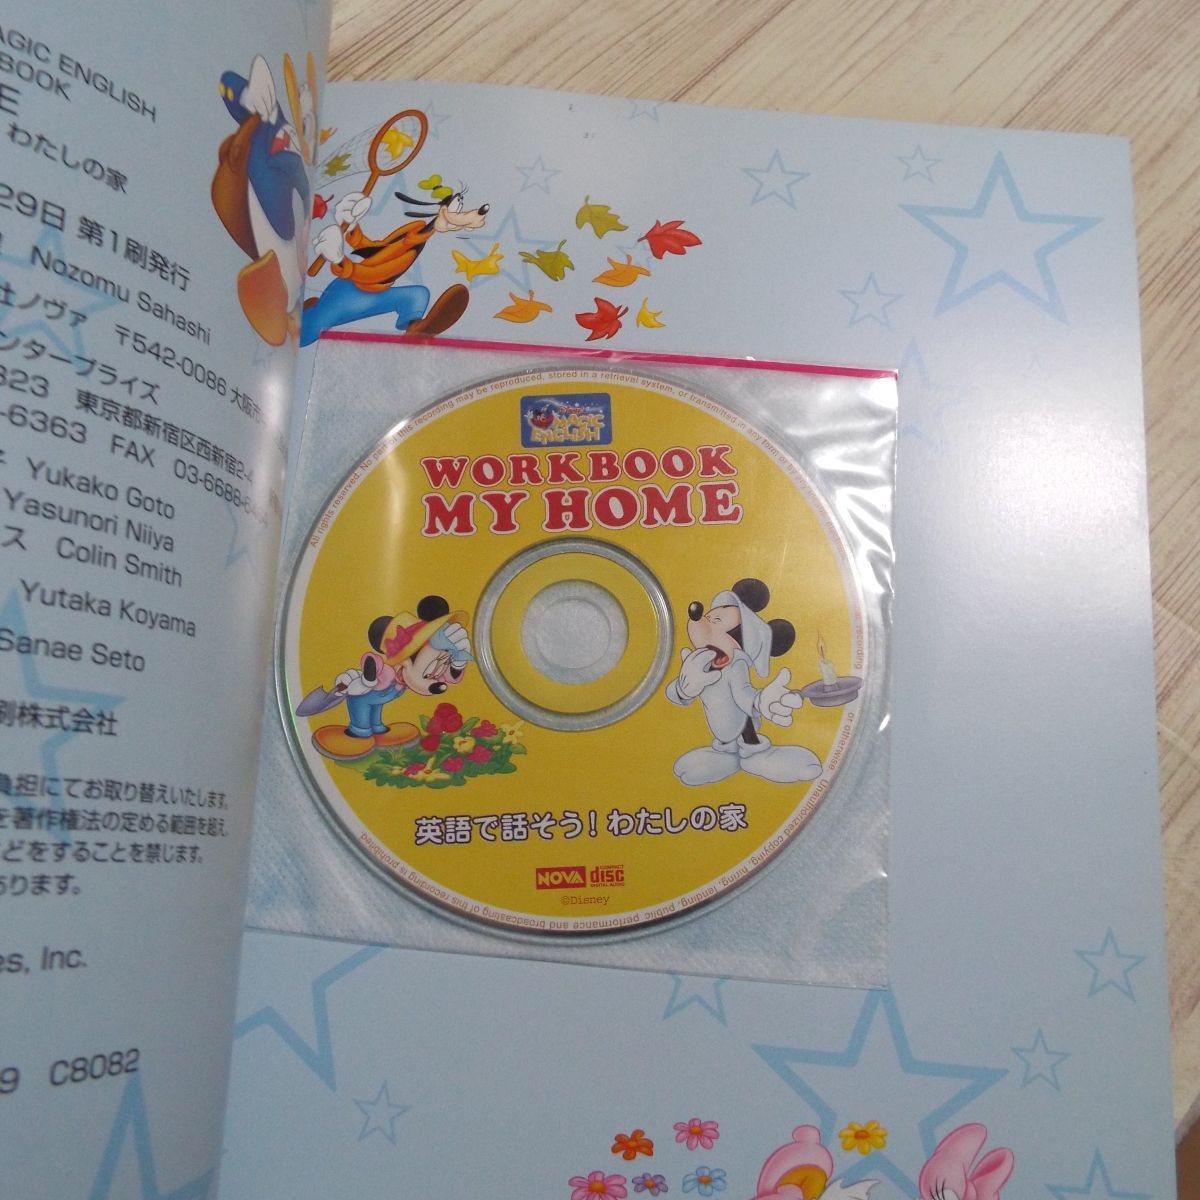  английский язык обучающий материал [Disney*s MAGIC ENGLISH NOVA WARKBOOK MY HOME : английский язык . рассказ похоже! мой дом ] NOVA CD есть ученик начальной школы предназначенный изучение английского языка .